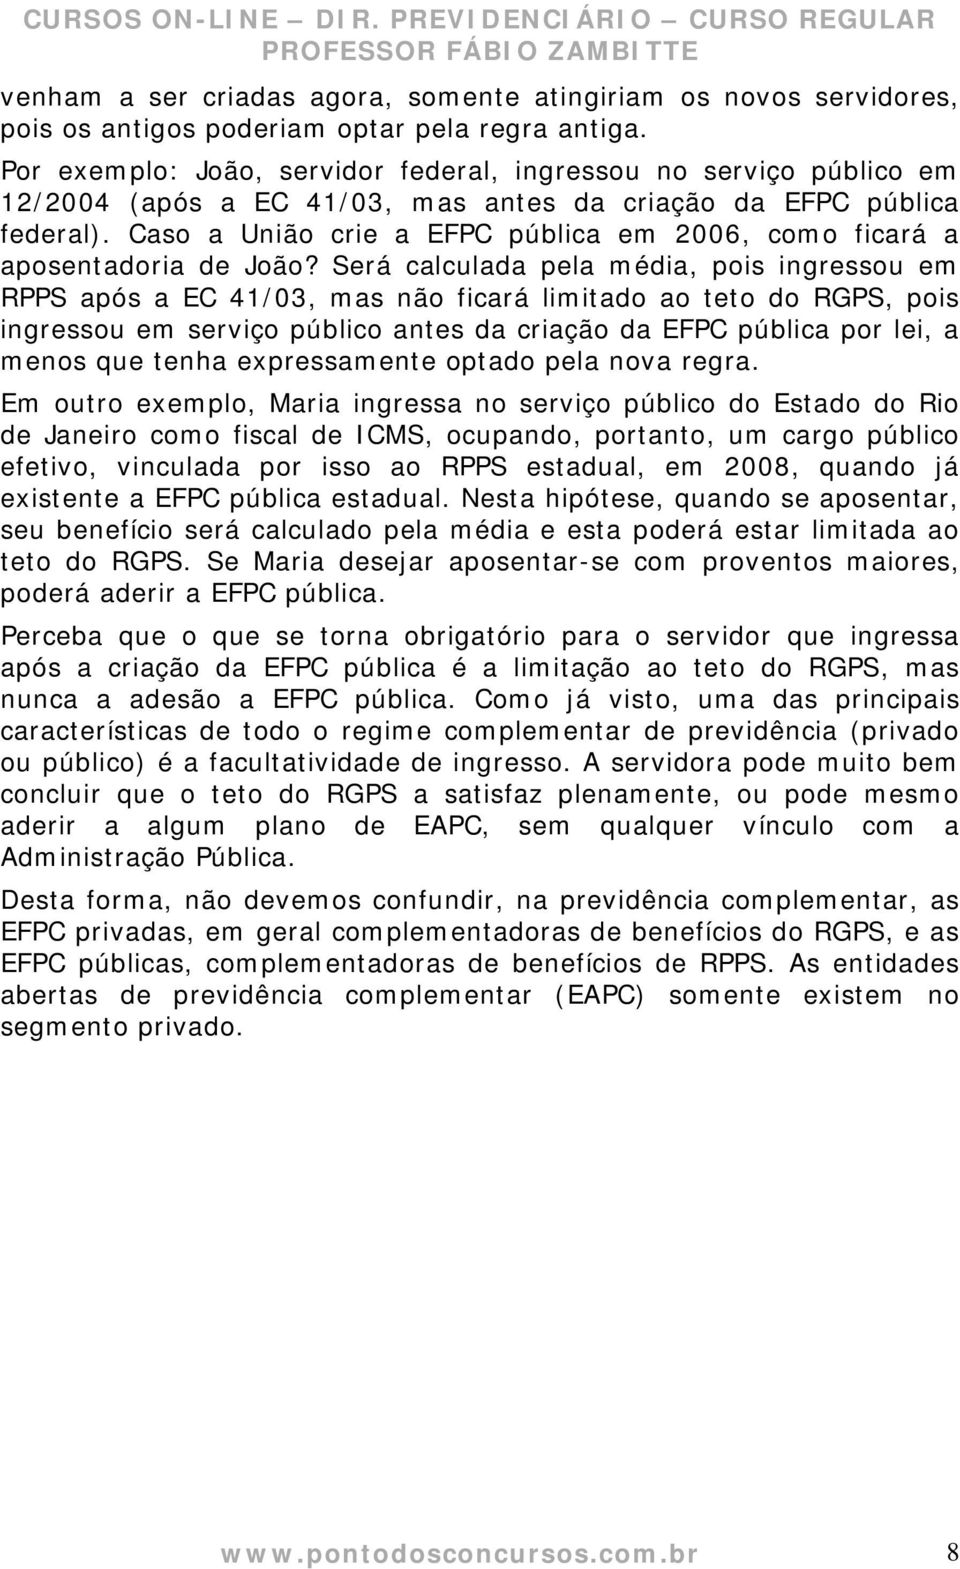 Caso a União crie a EFPC pública em 2006, como ficará a aposentadoria de João?